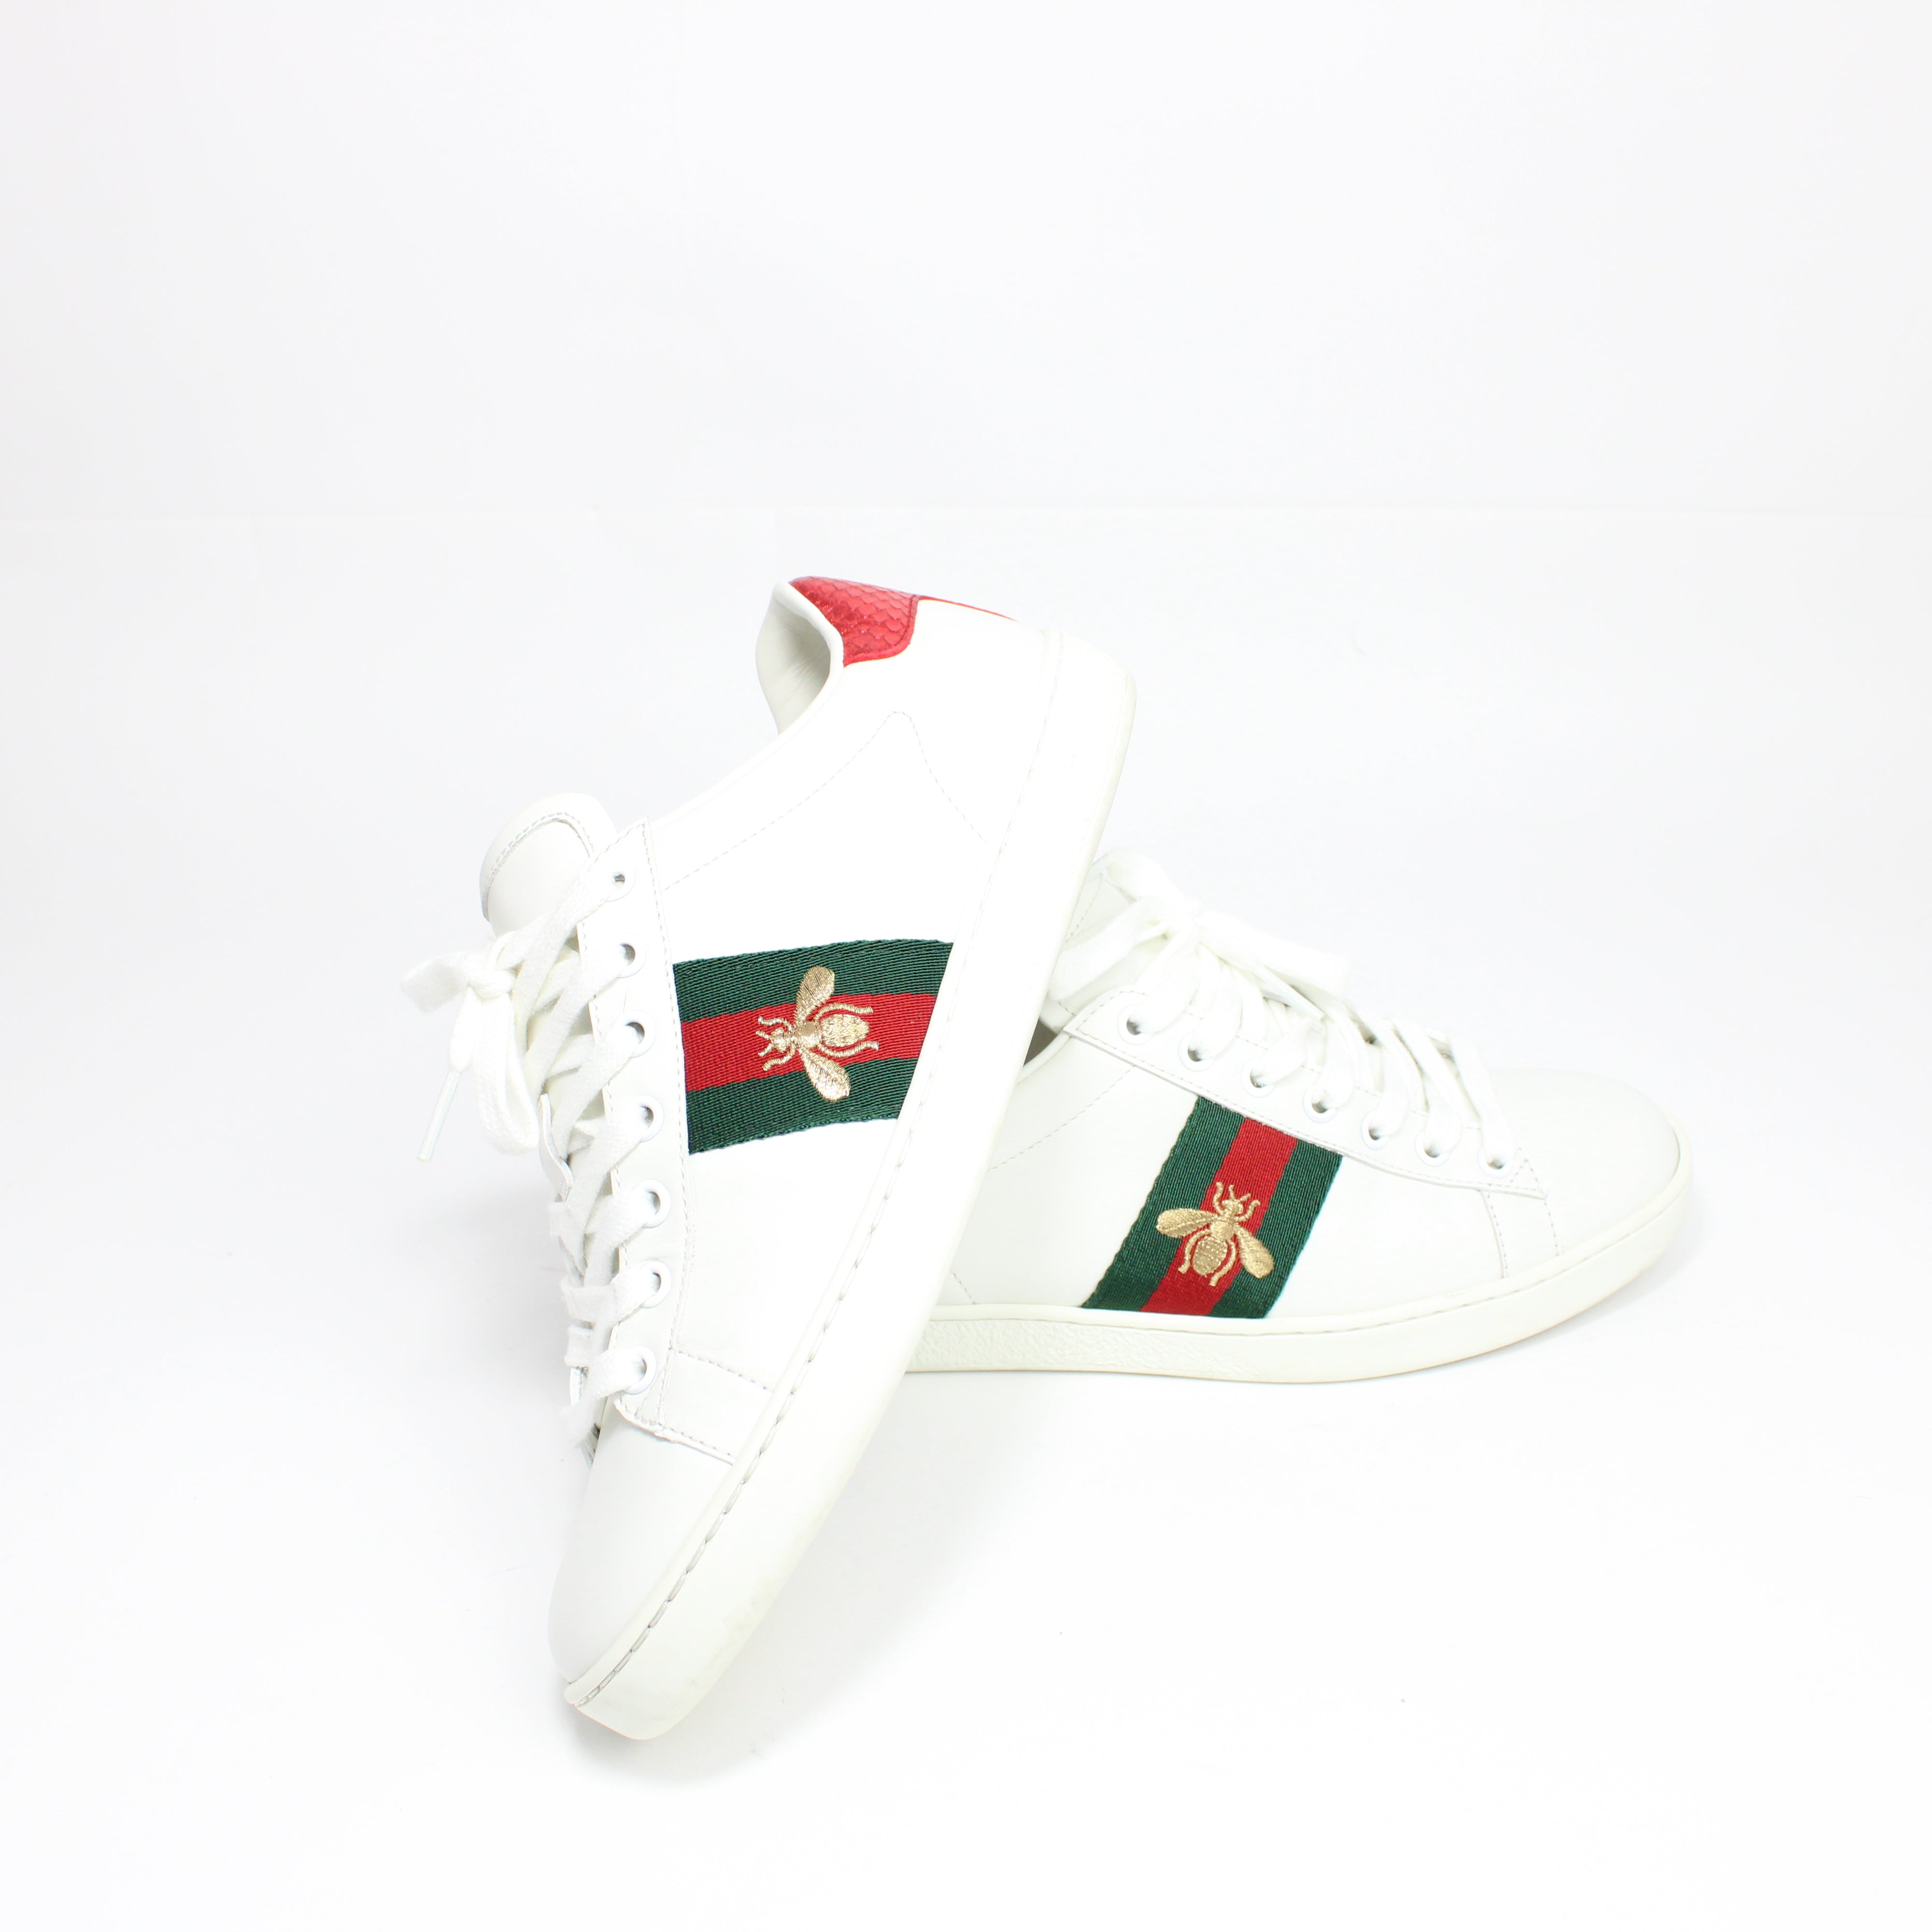 Gucci Ace Donna Ricamo Ape Sneakers Taglia 37,5